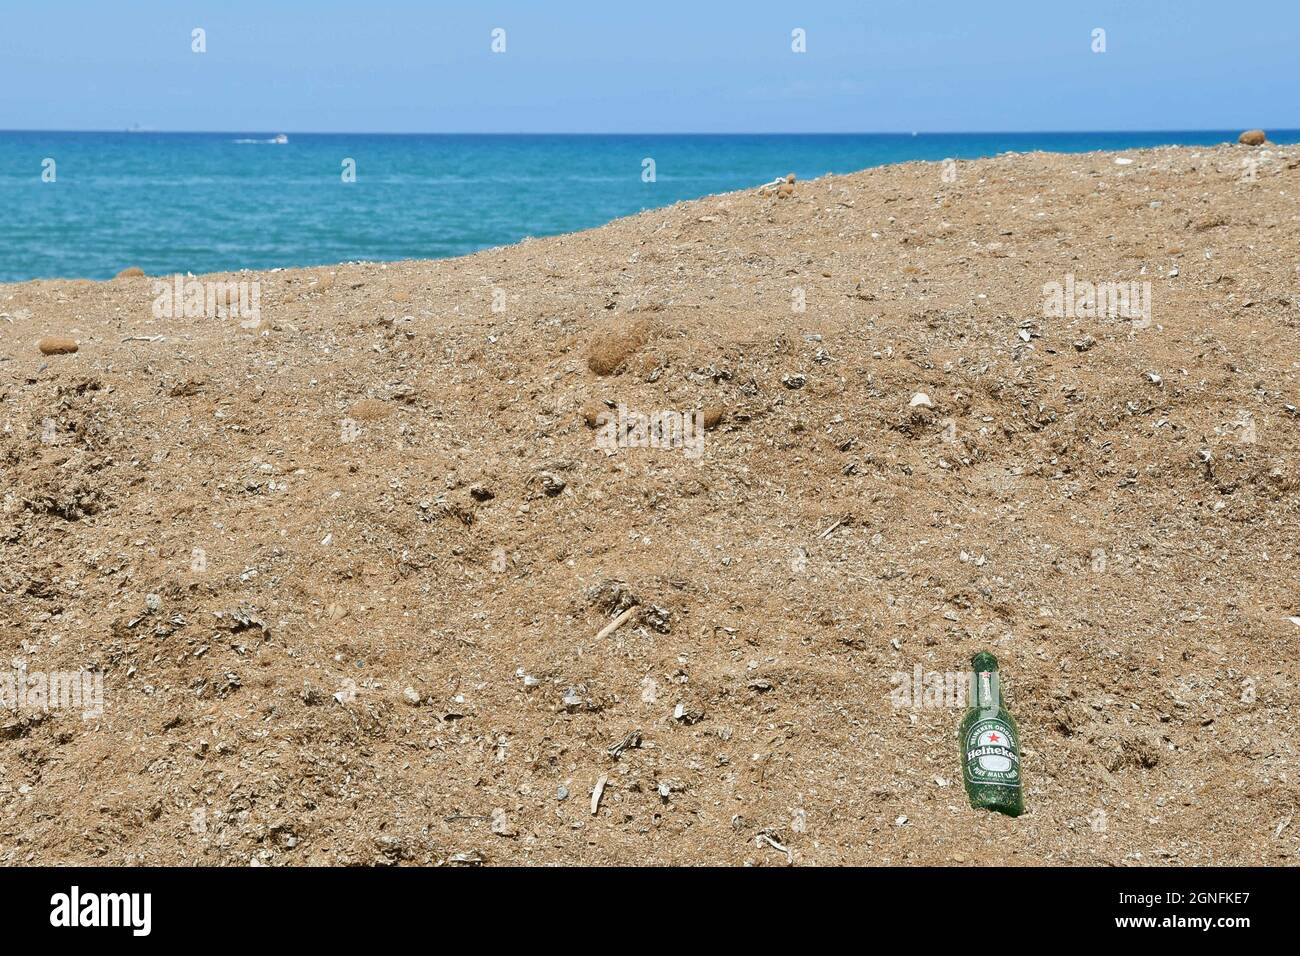 Una botella de cerveza vacía abandonada en la orilla arenosa con el mar en el fondo, concepto de la cuestión ambiental, San Vincenzo, Toscana, Italia Foto de stock